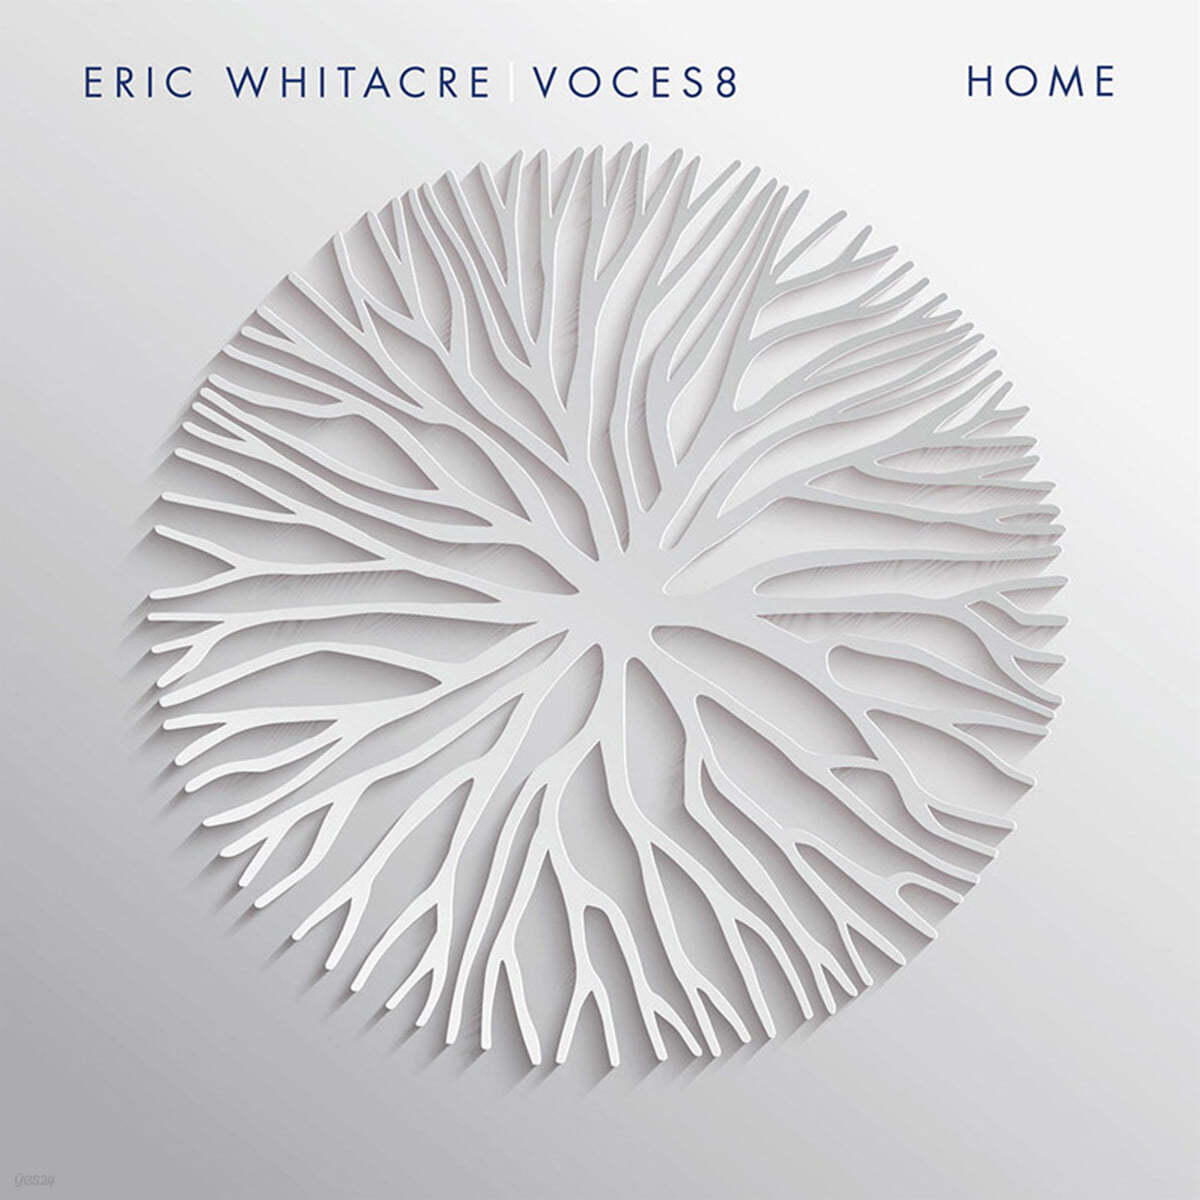 Eric Whitacre 에릭 휘태커 &amp; 보컬 앙상블 보체스8의 프로젝트 앨범 (Home)